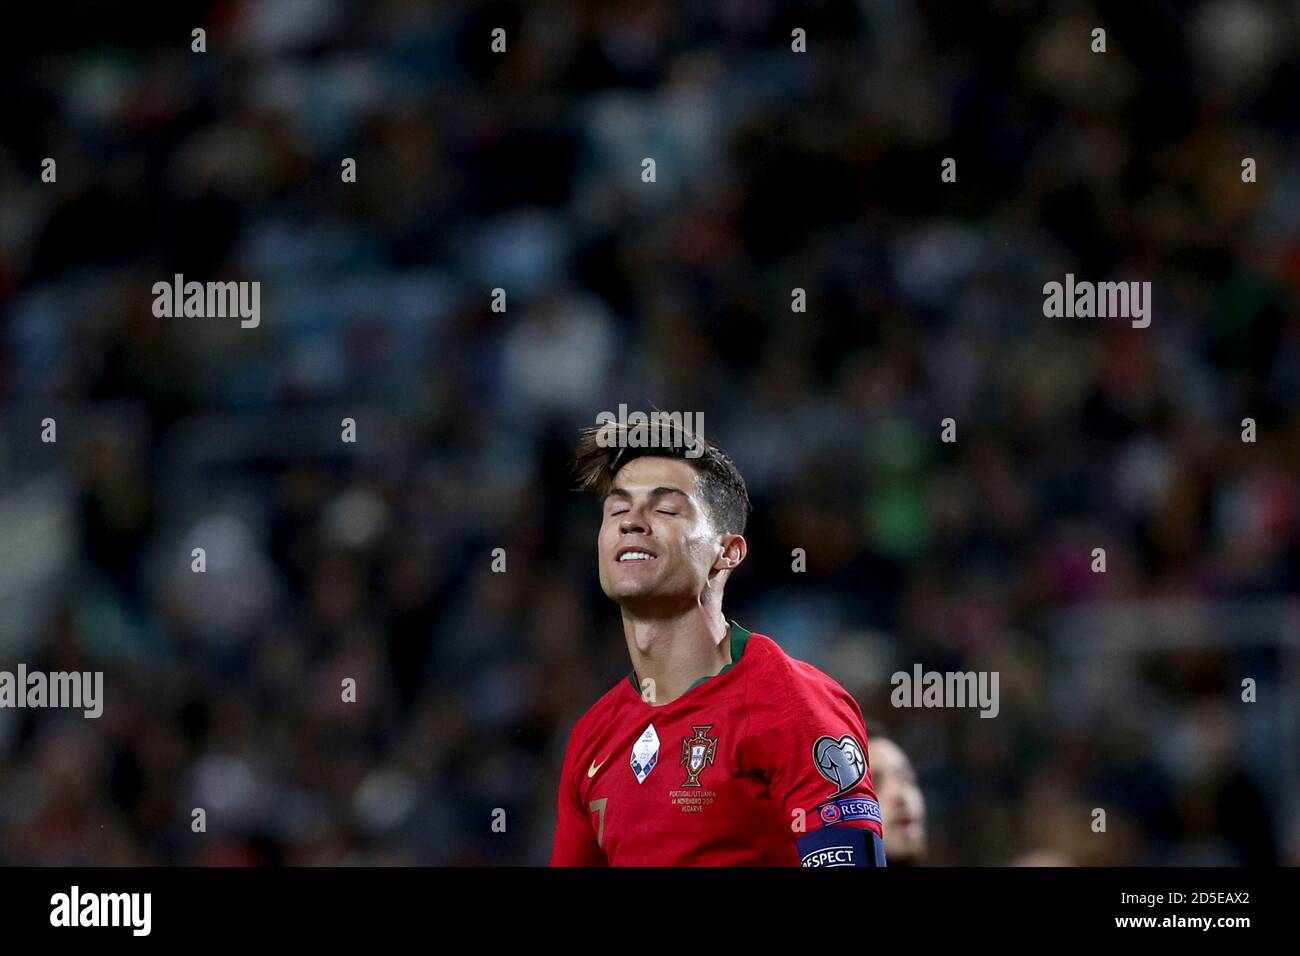 Faro, Portugal. octubre de 2020. La estrella portuguesa de fútbol Cristiano Ronaldo ha obtenido resultados positivos para COVID-19, informó la Federación PortugalÃ•s de Fútbol en un comunicado en Lisboa, Portugal,